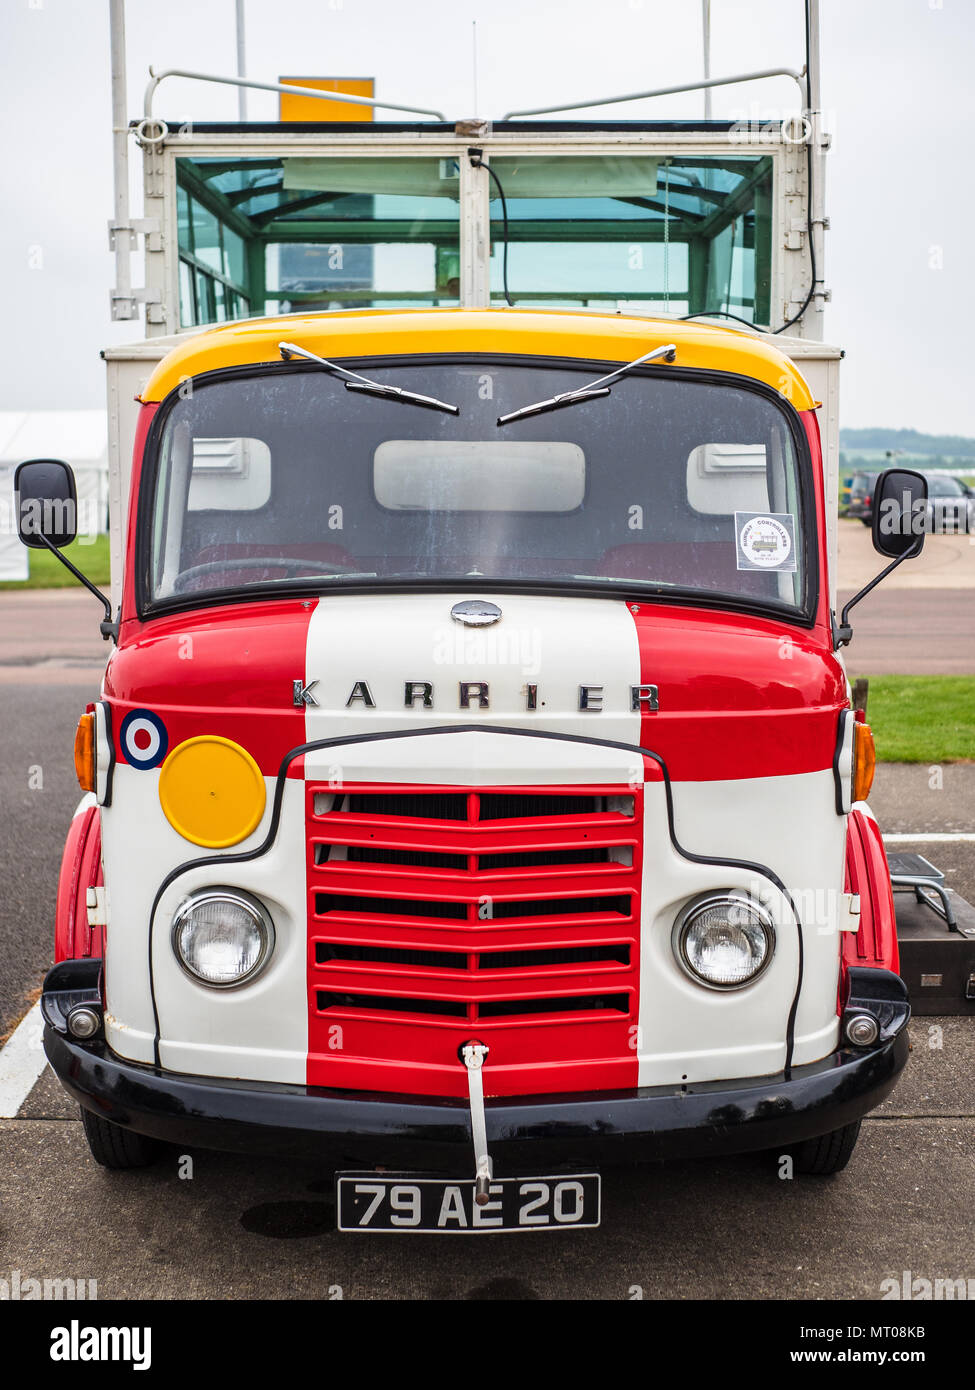 Karrier Bantam Vintage Camion de contrôle de l'aérodrome Banque D'Images